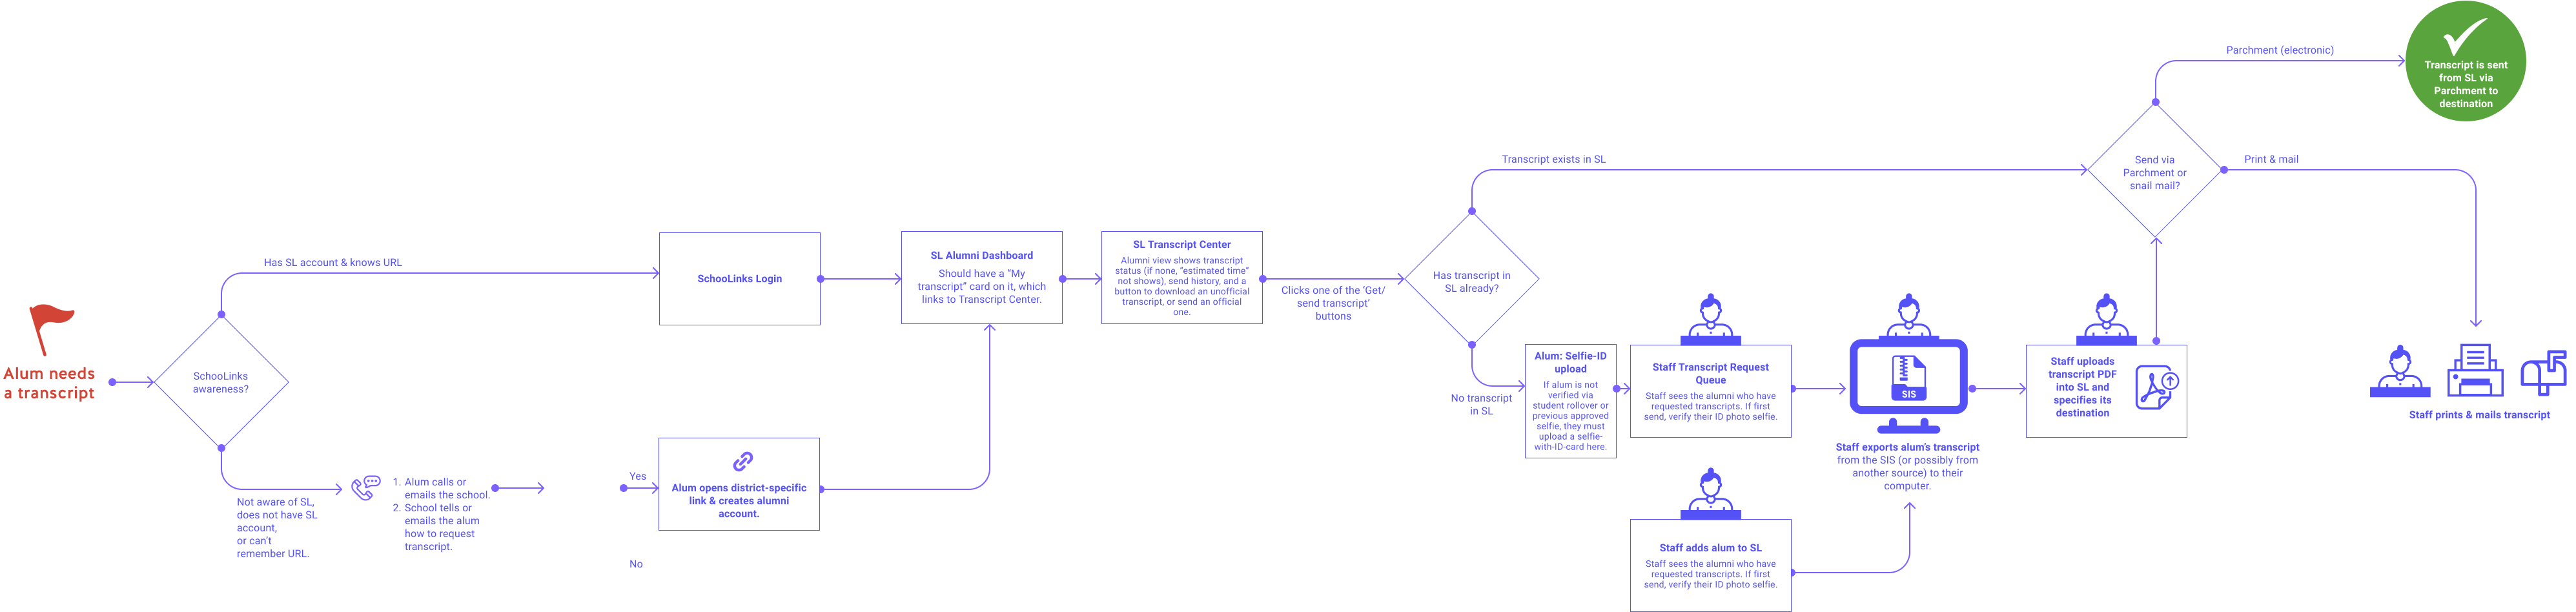 Flow chart of the alumni transcript process.